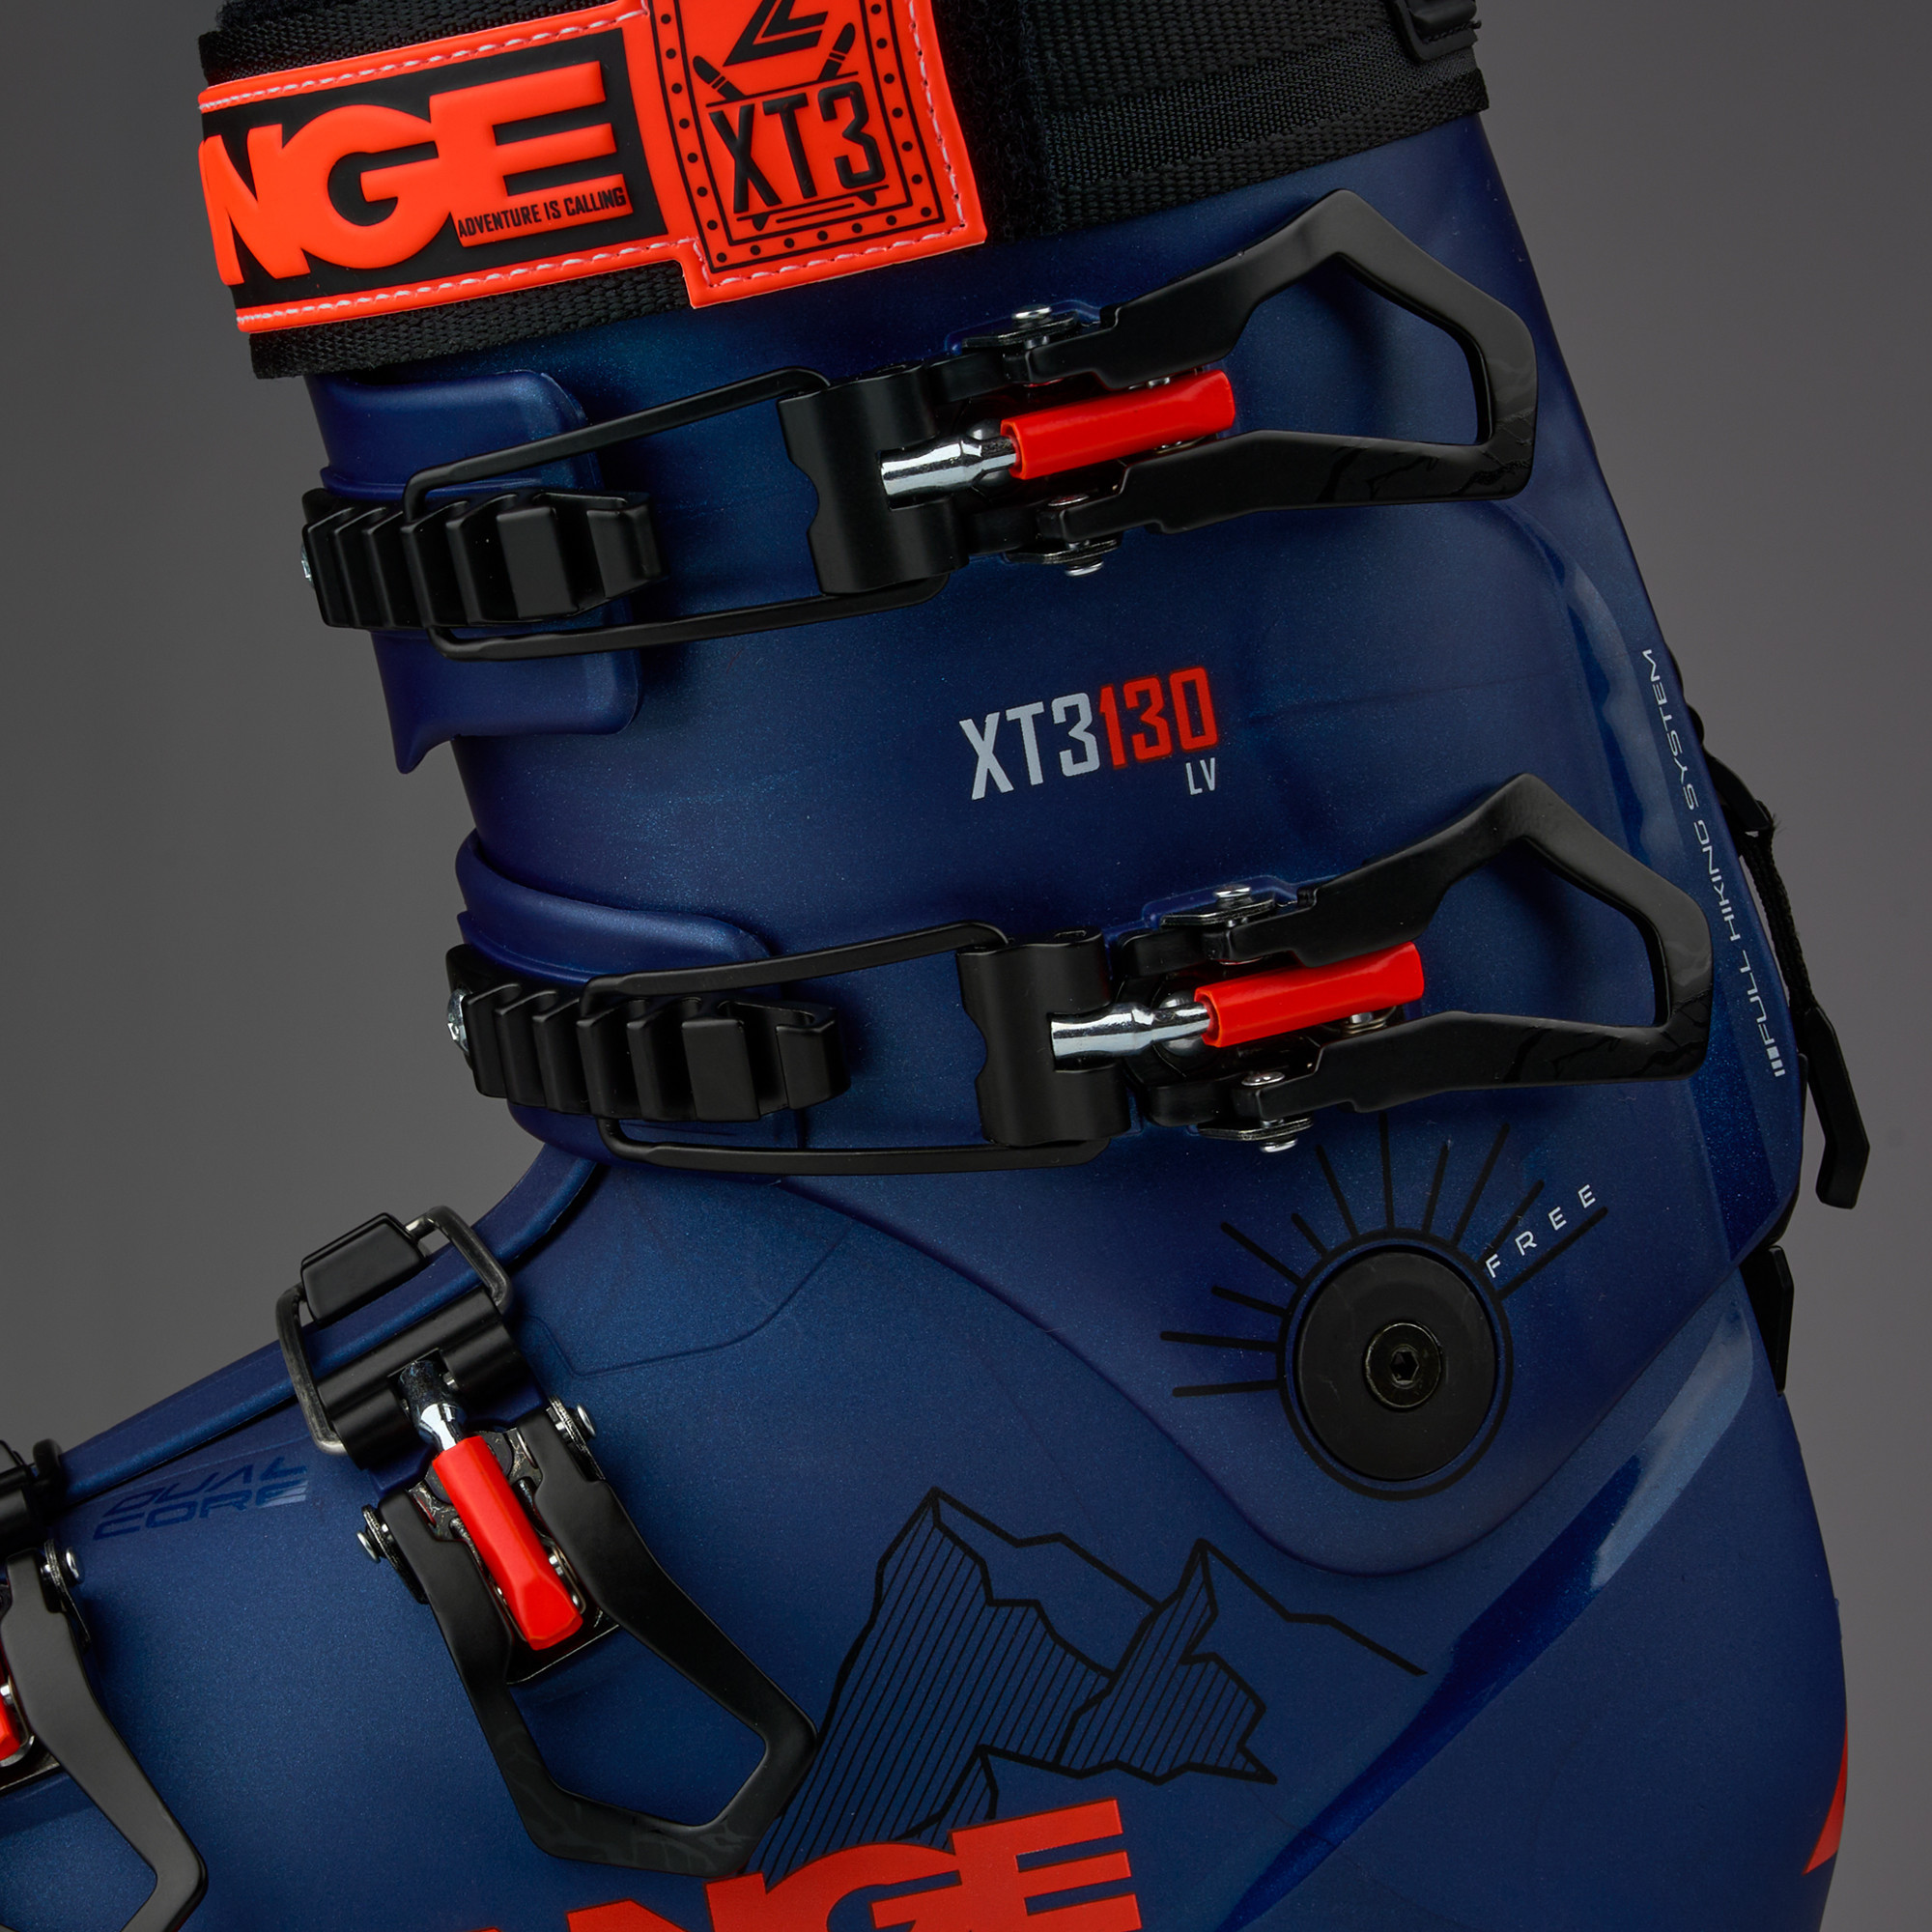 LANGE Ski Boots XT3 80 W L.V. (20/21) - Alpine Hut